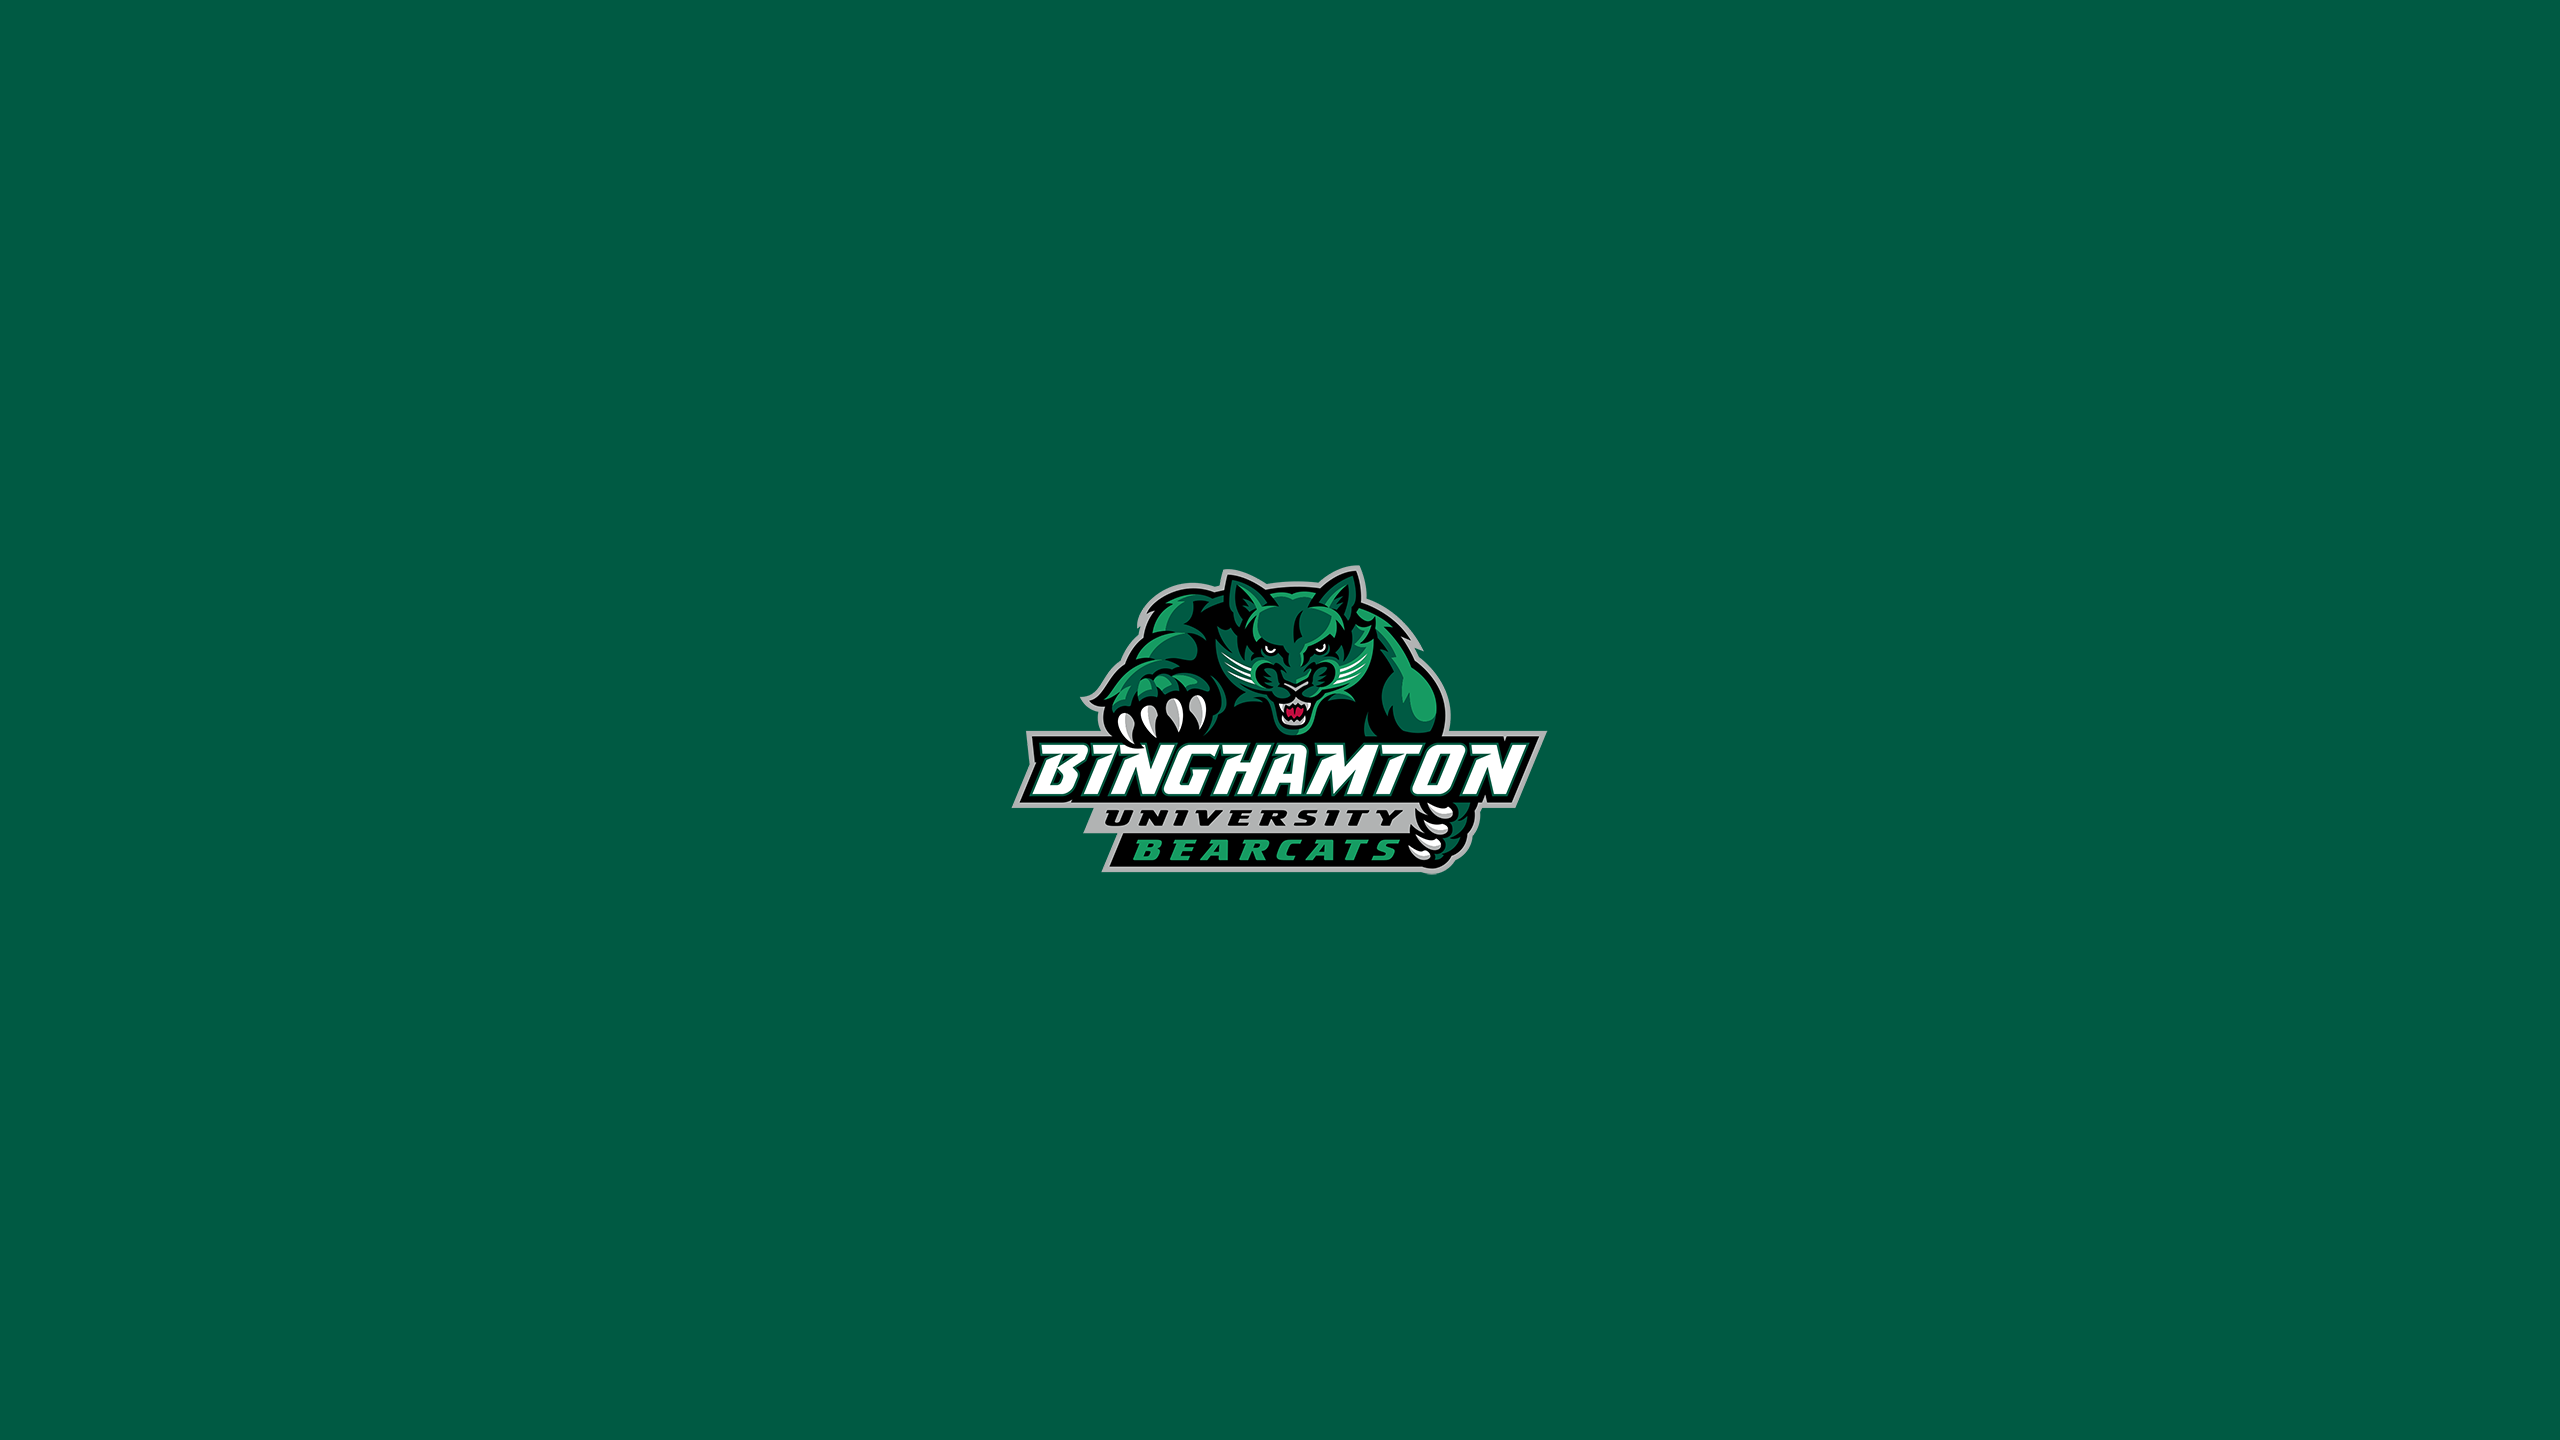 Binghamton University Bearcats Wallpapers